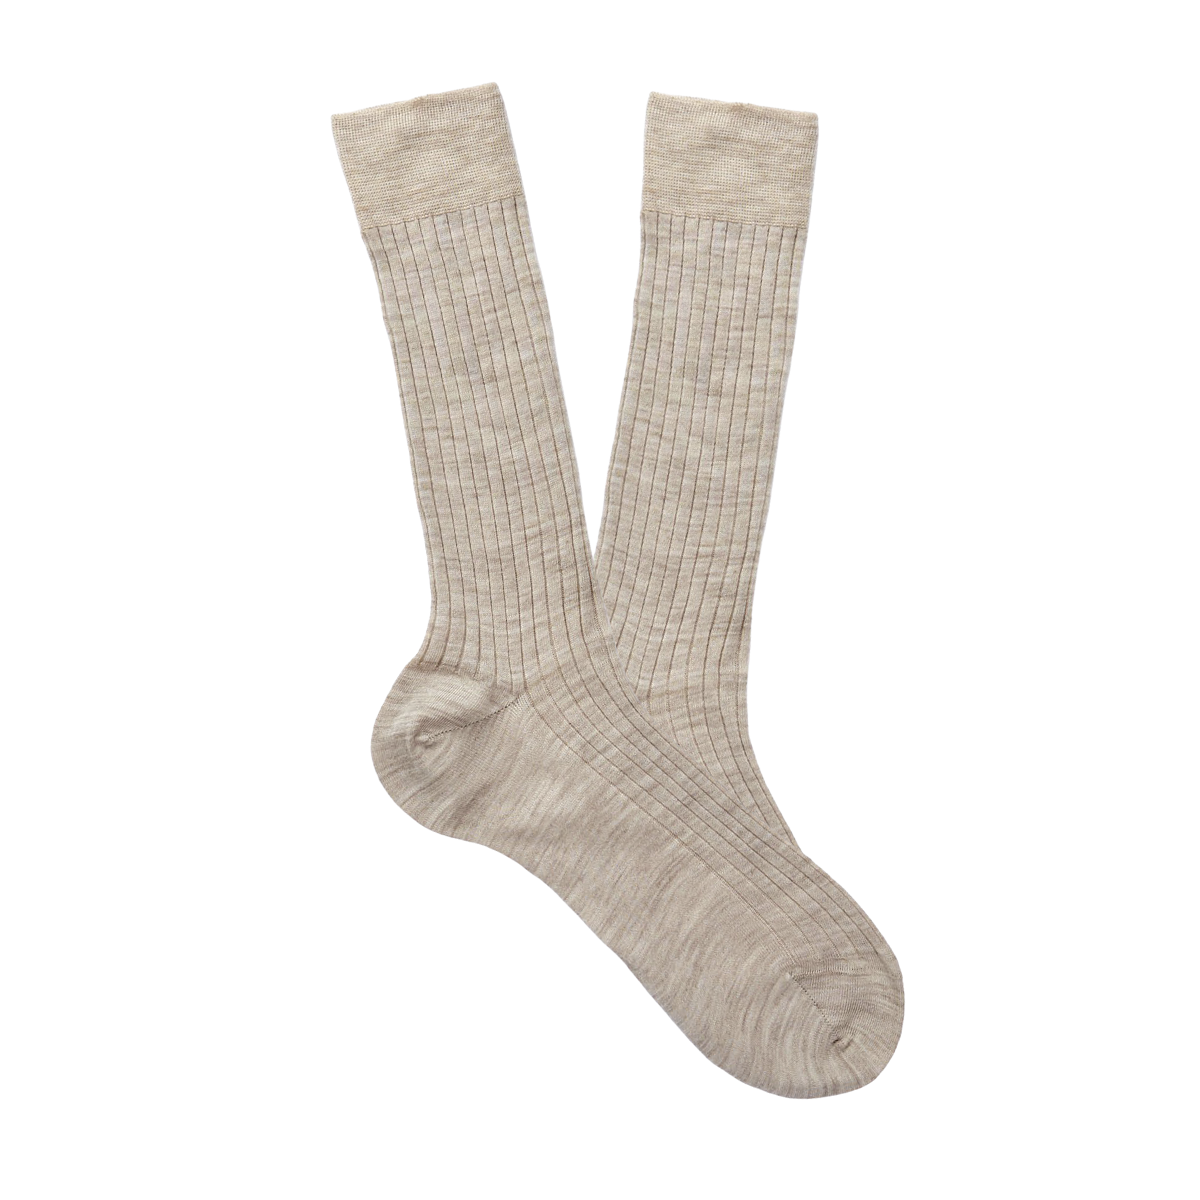 Bresciani Light Beige Ribbed Wool Nylon Socks Feature